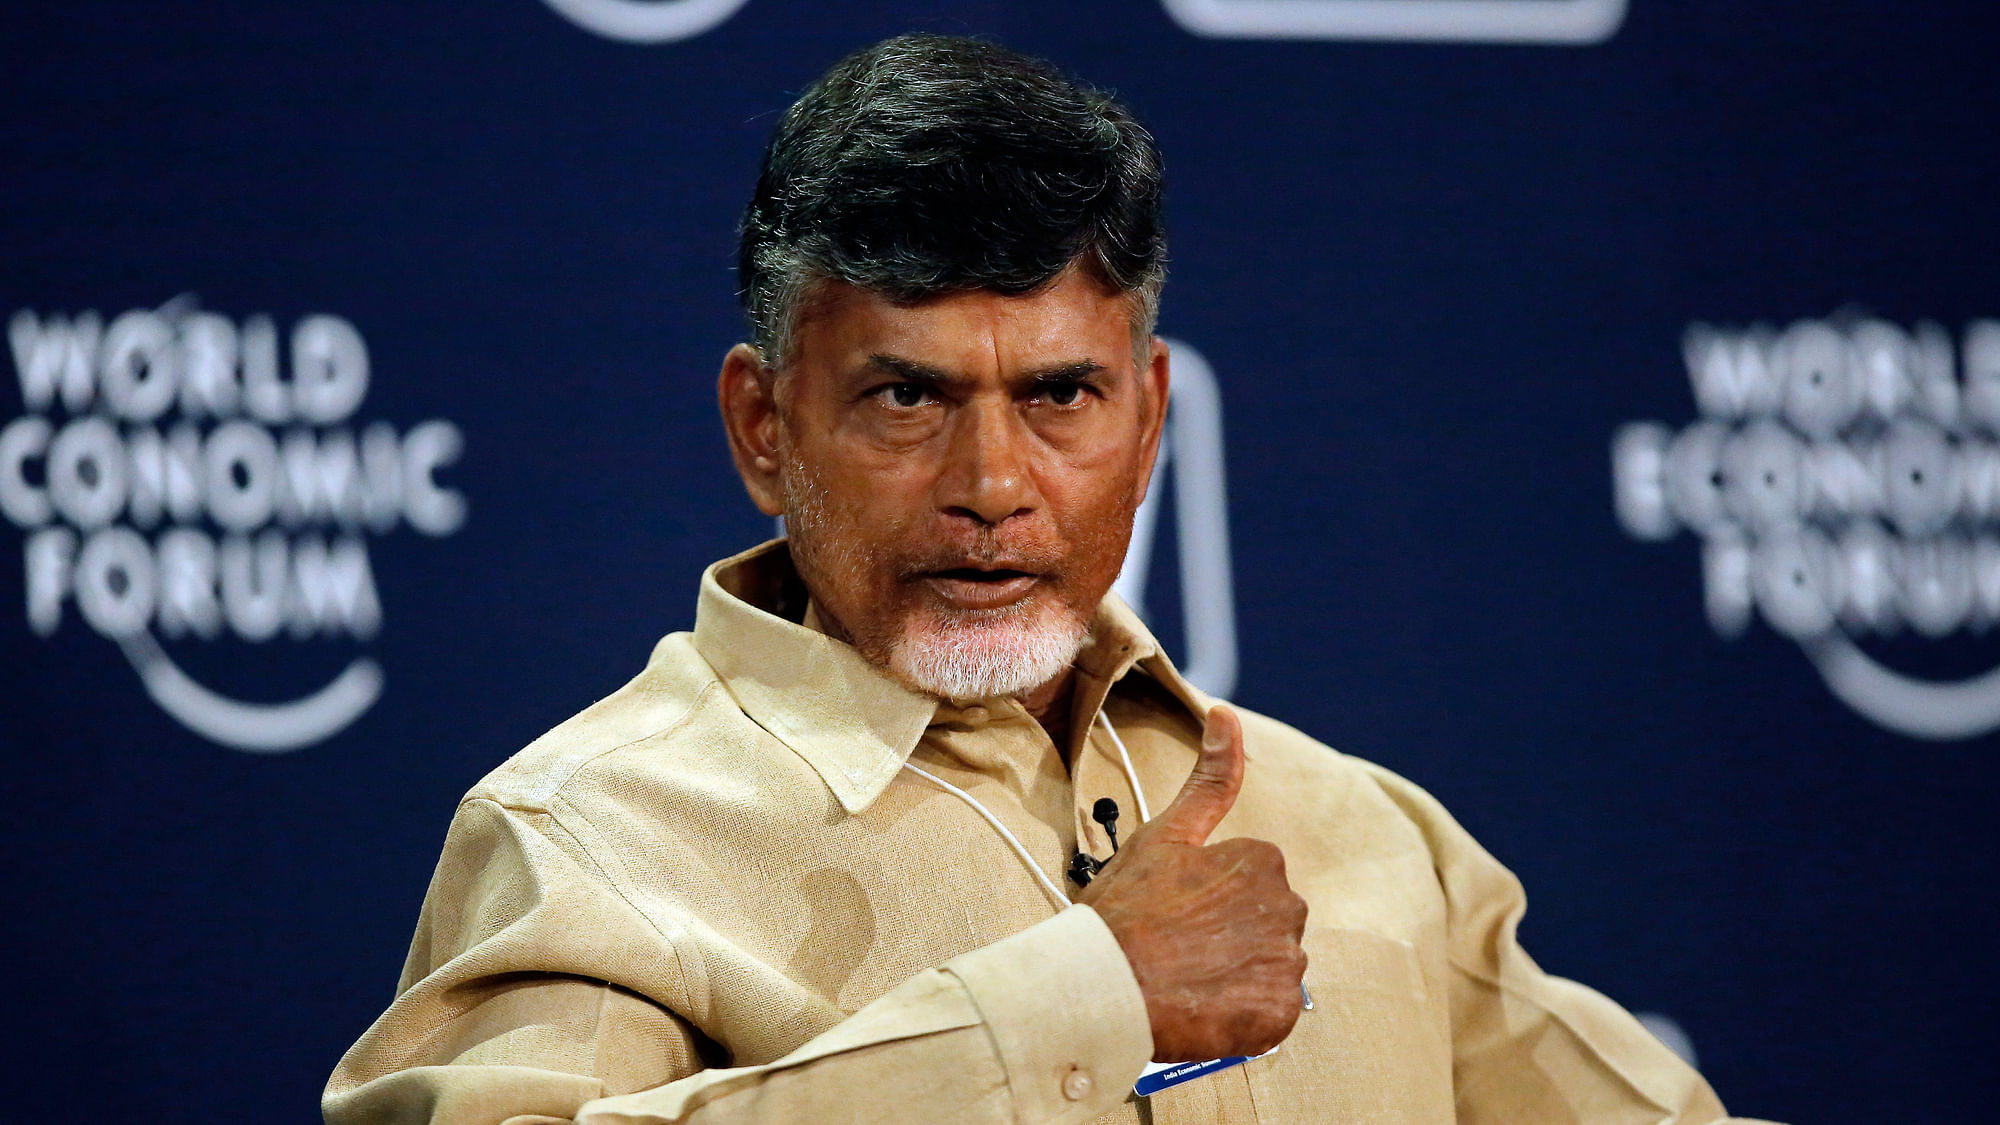 N Chandrababu Naidu, Chief Minister, Andhra Pradesh. (Photo: Reuters)